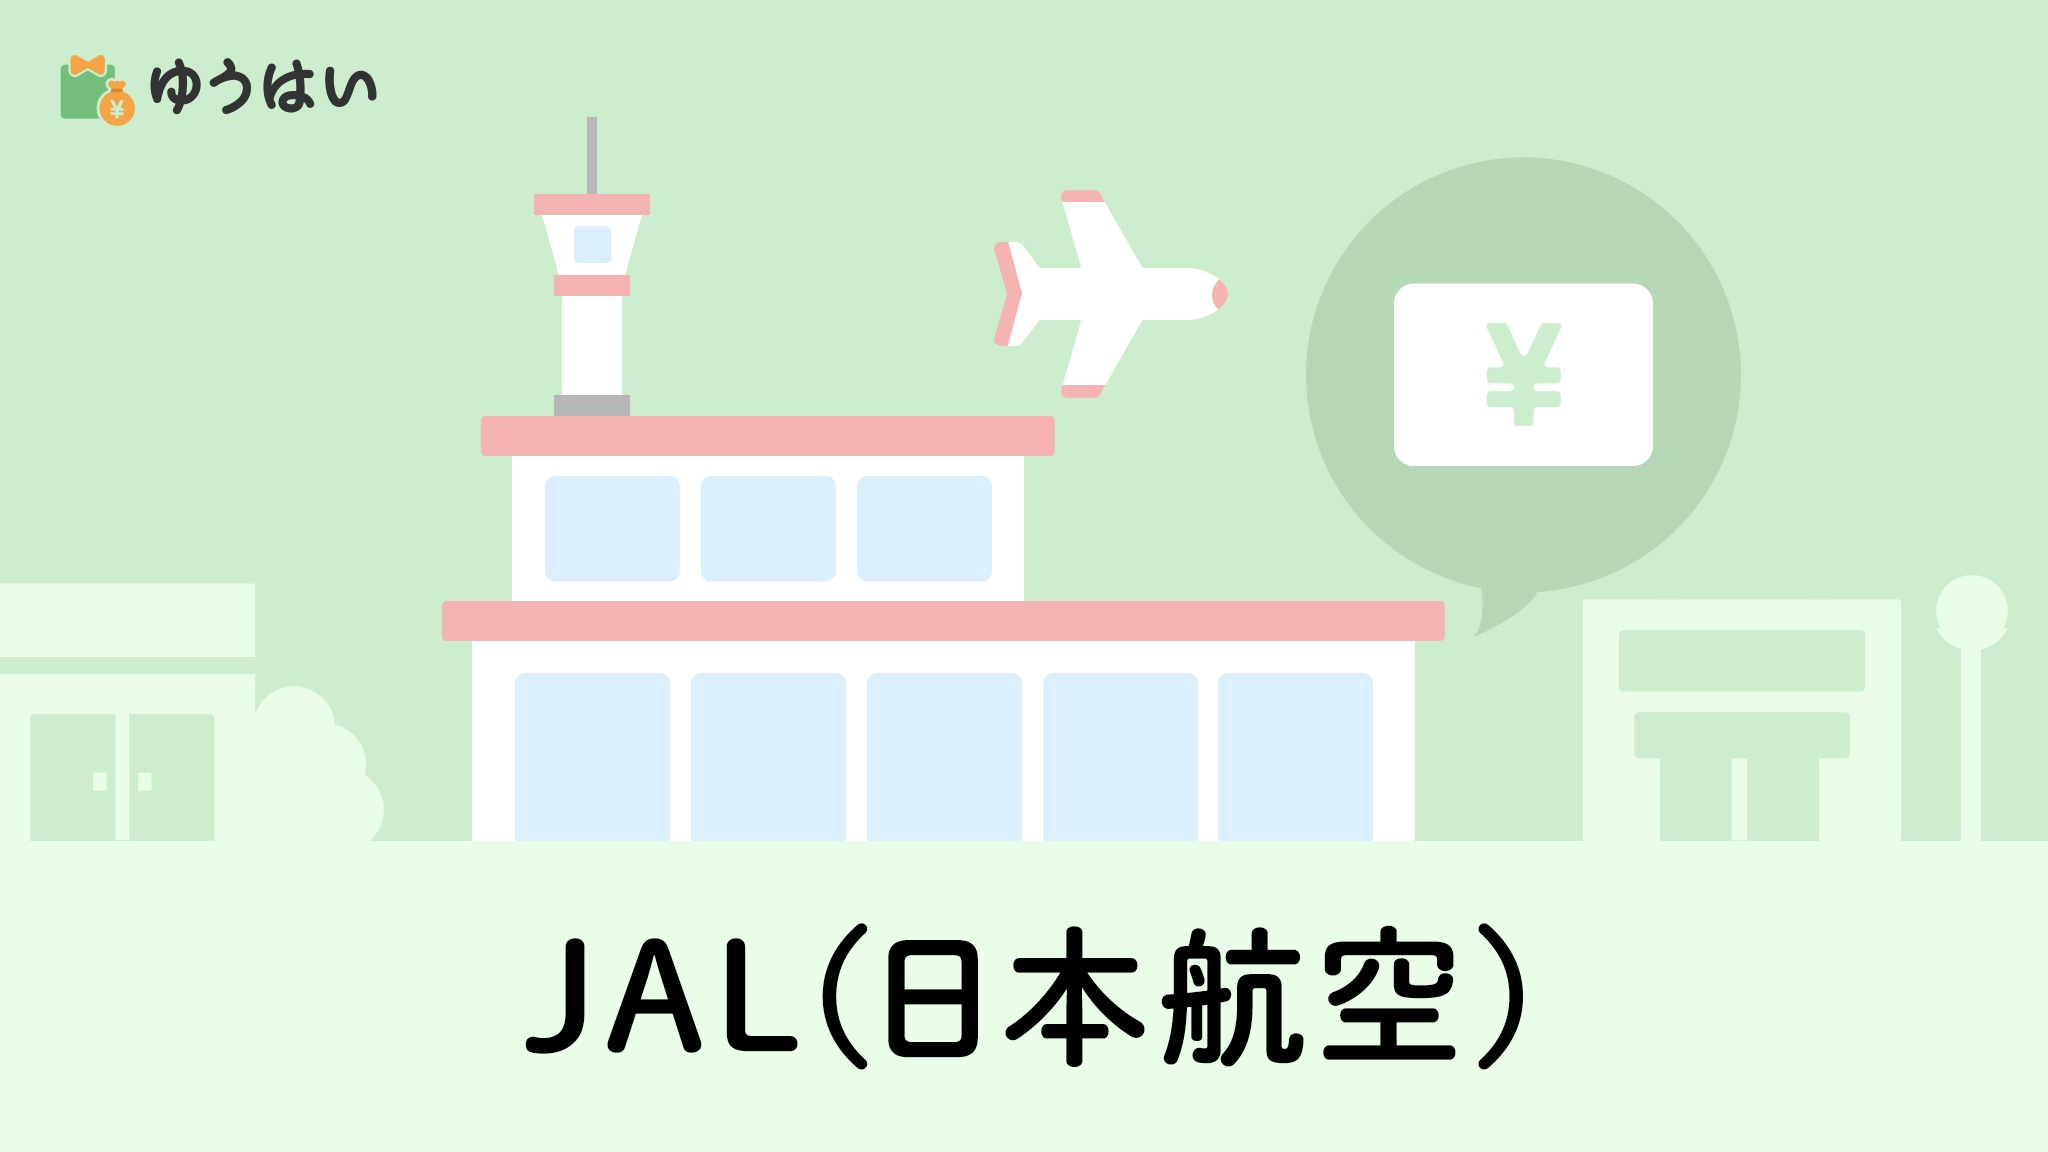 日本航空(9201)JAL株主優待券のお得な使い方・いつ届くかをブログで 